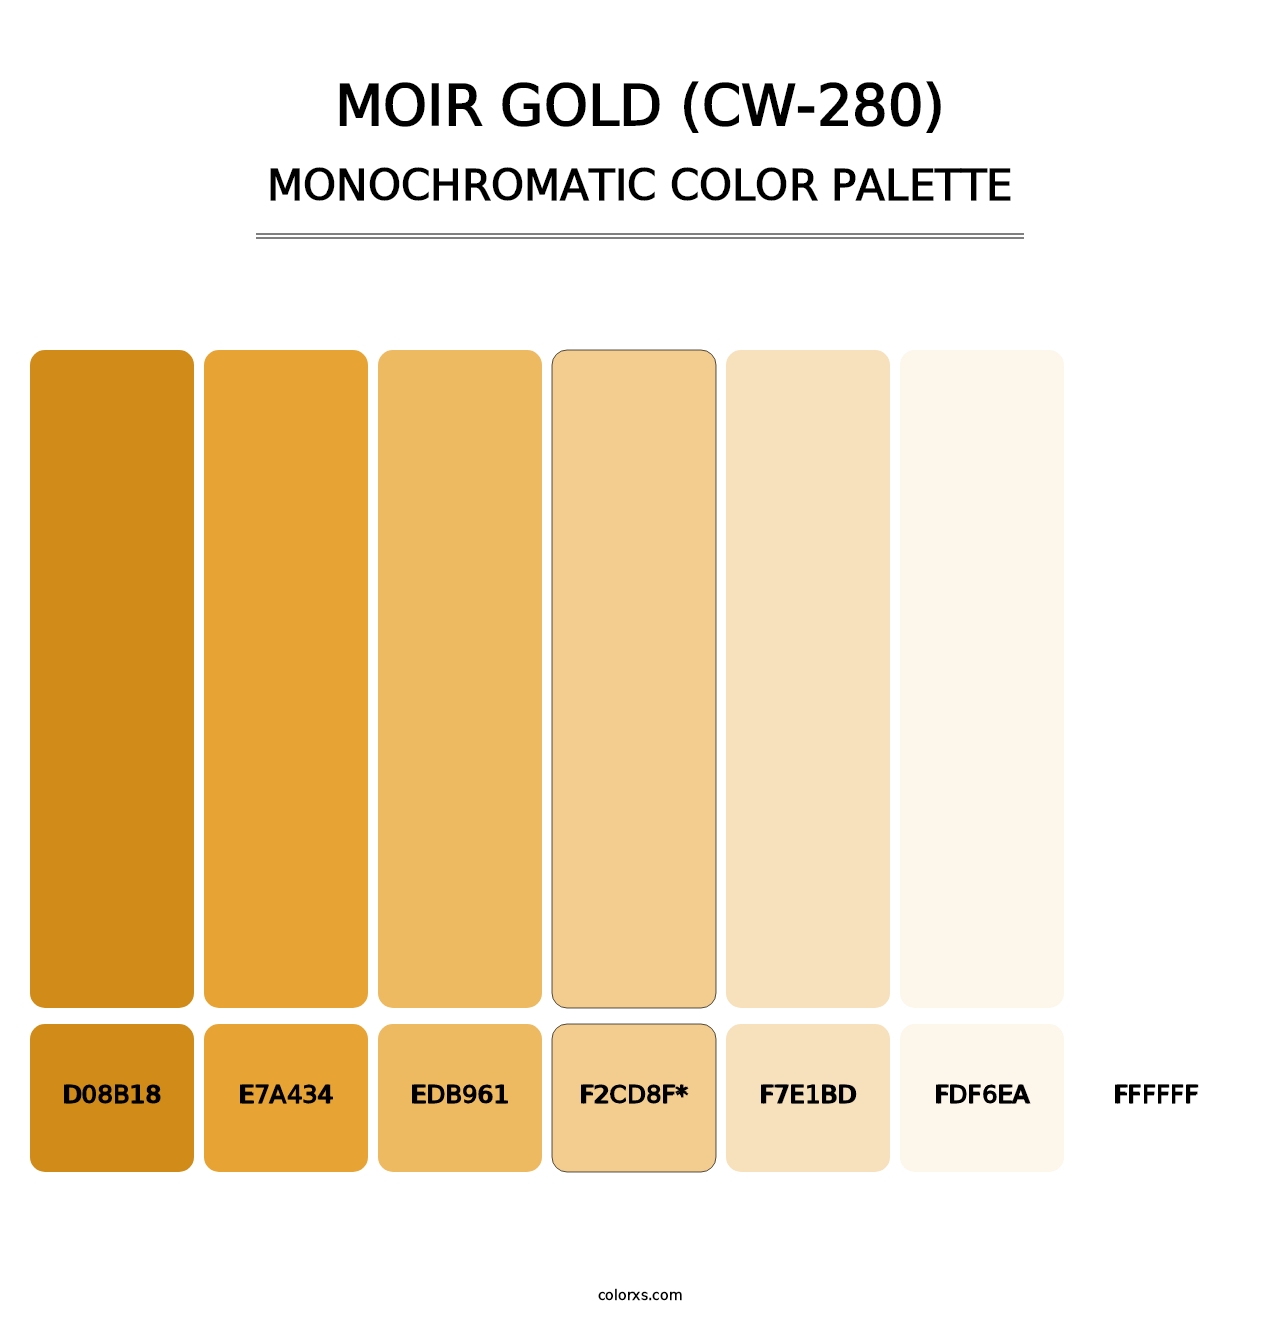 Moir Gold (CW-280) - Monochromatic Color Palette